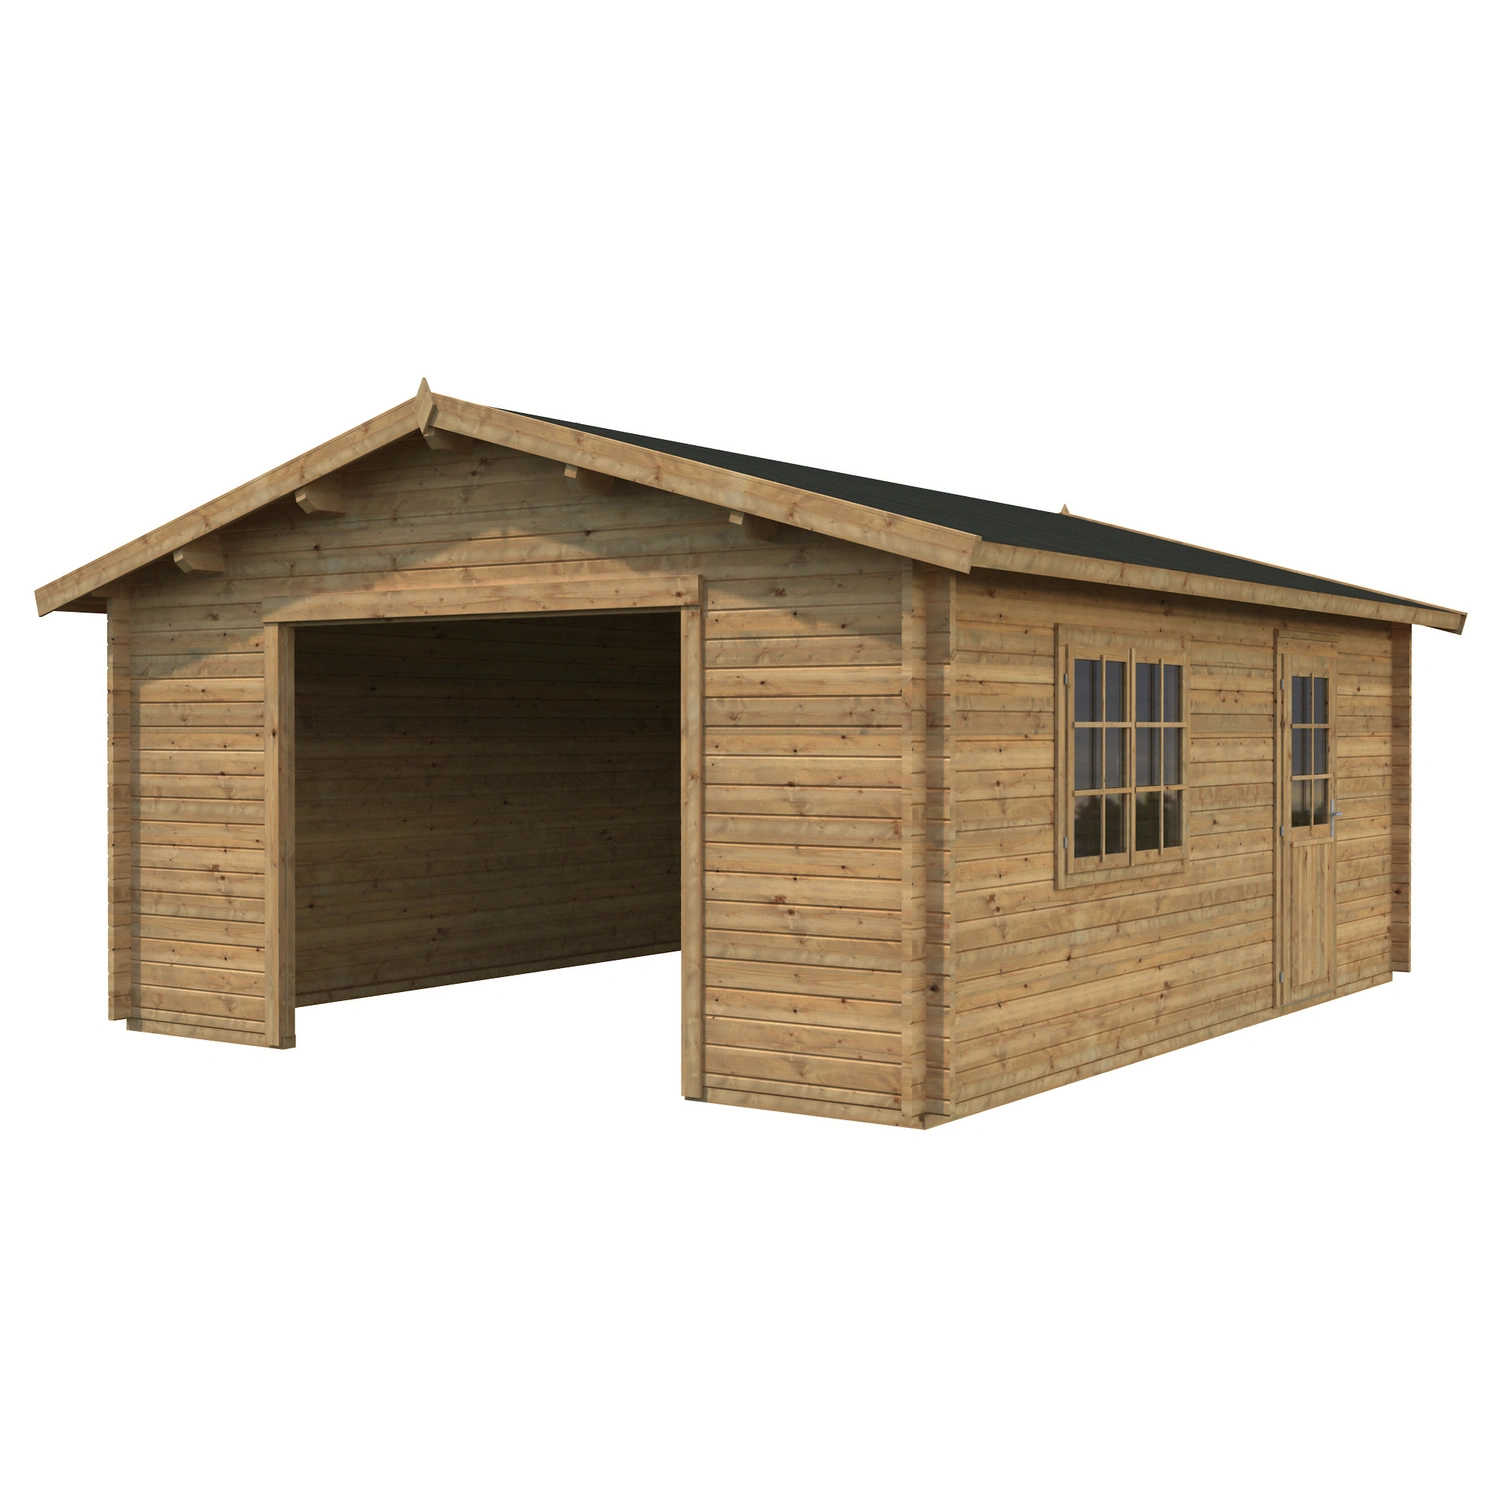 PALMAKO AS Blockbohlen-Garage, BxT: 540 x 540 cm (Außenmaße), Holz